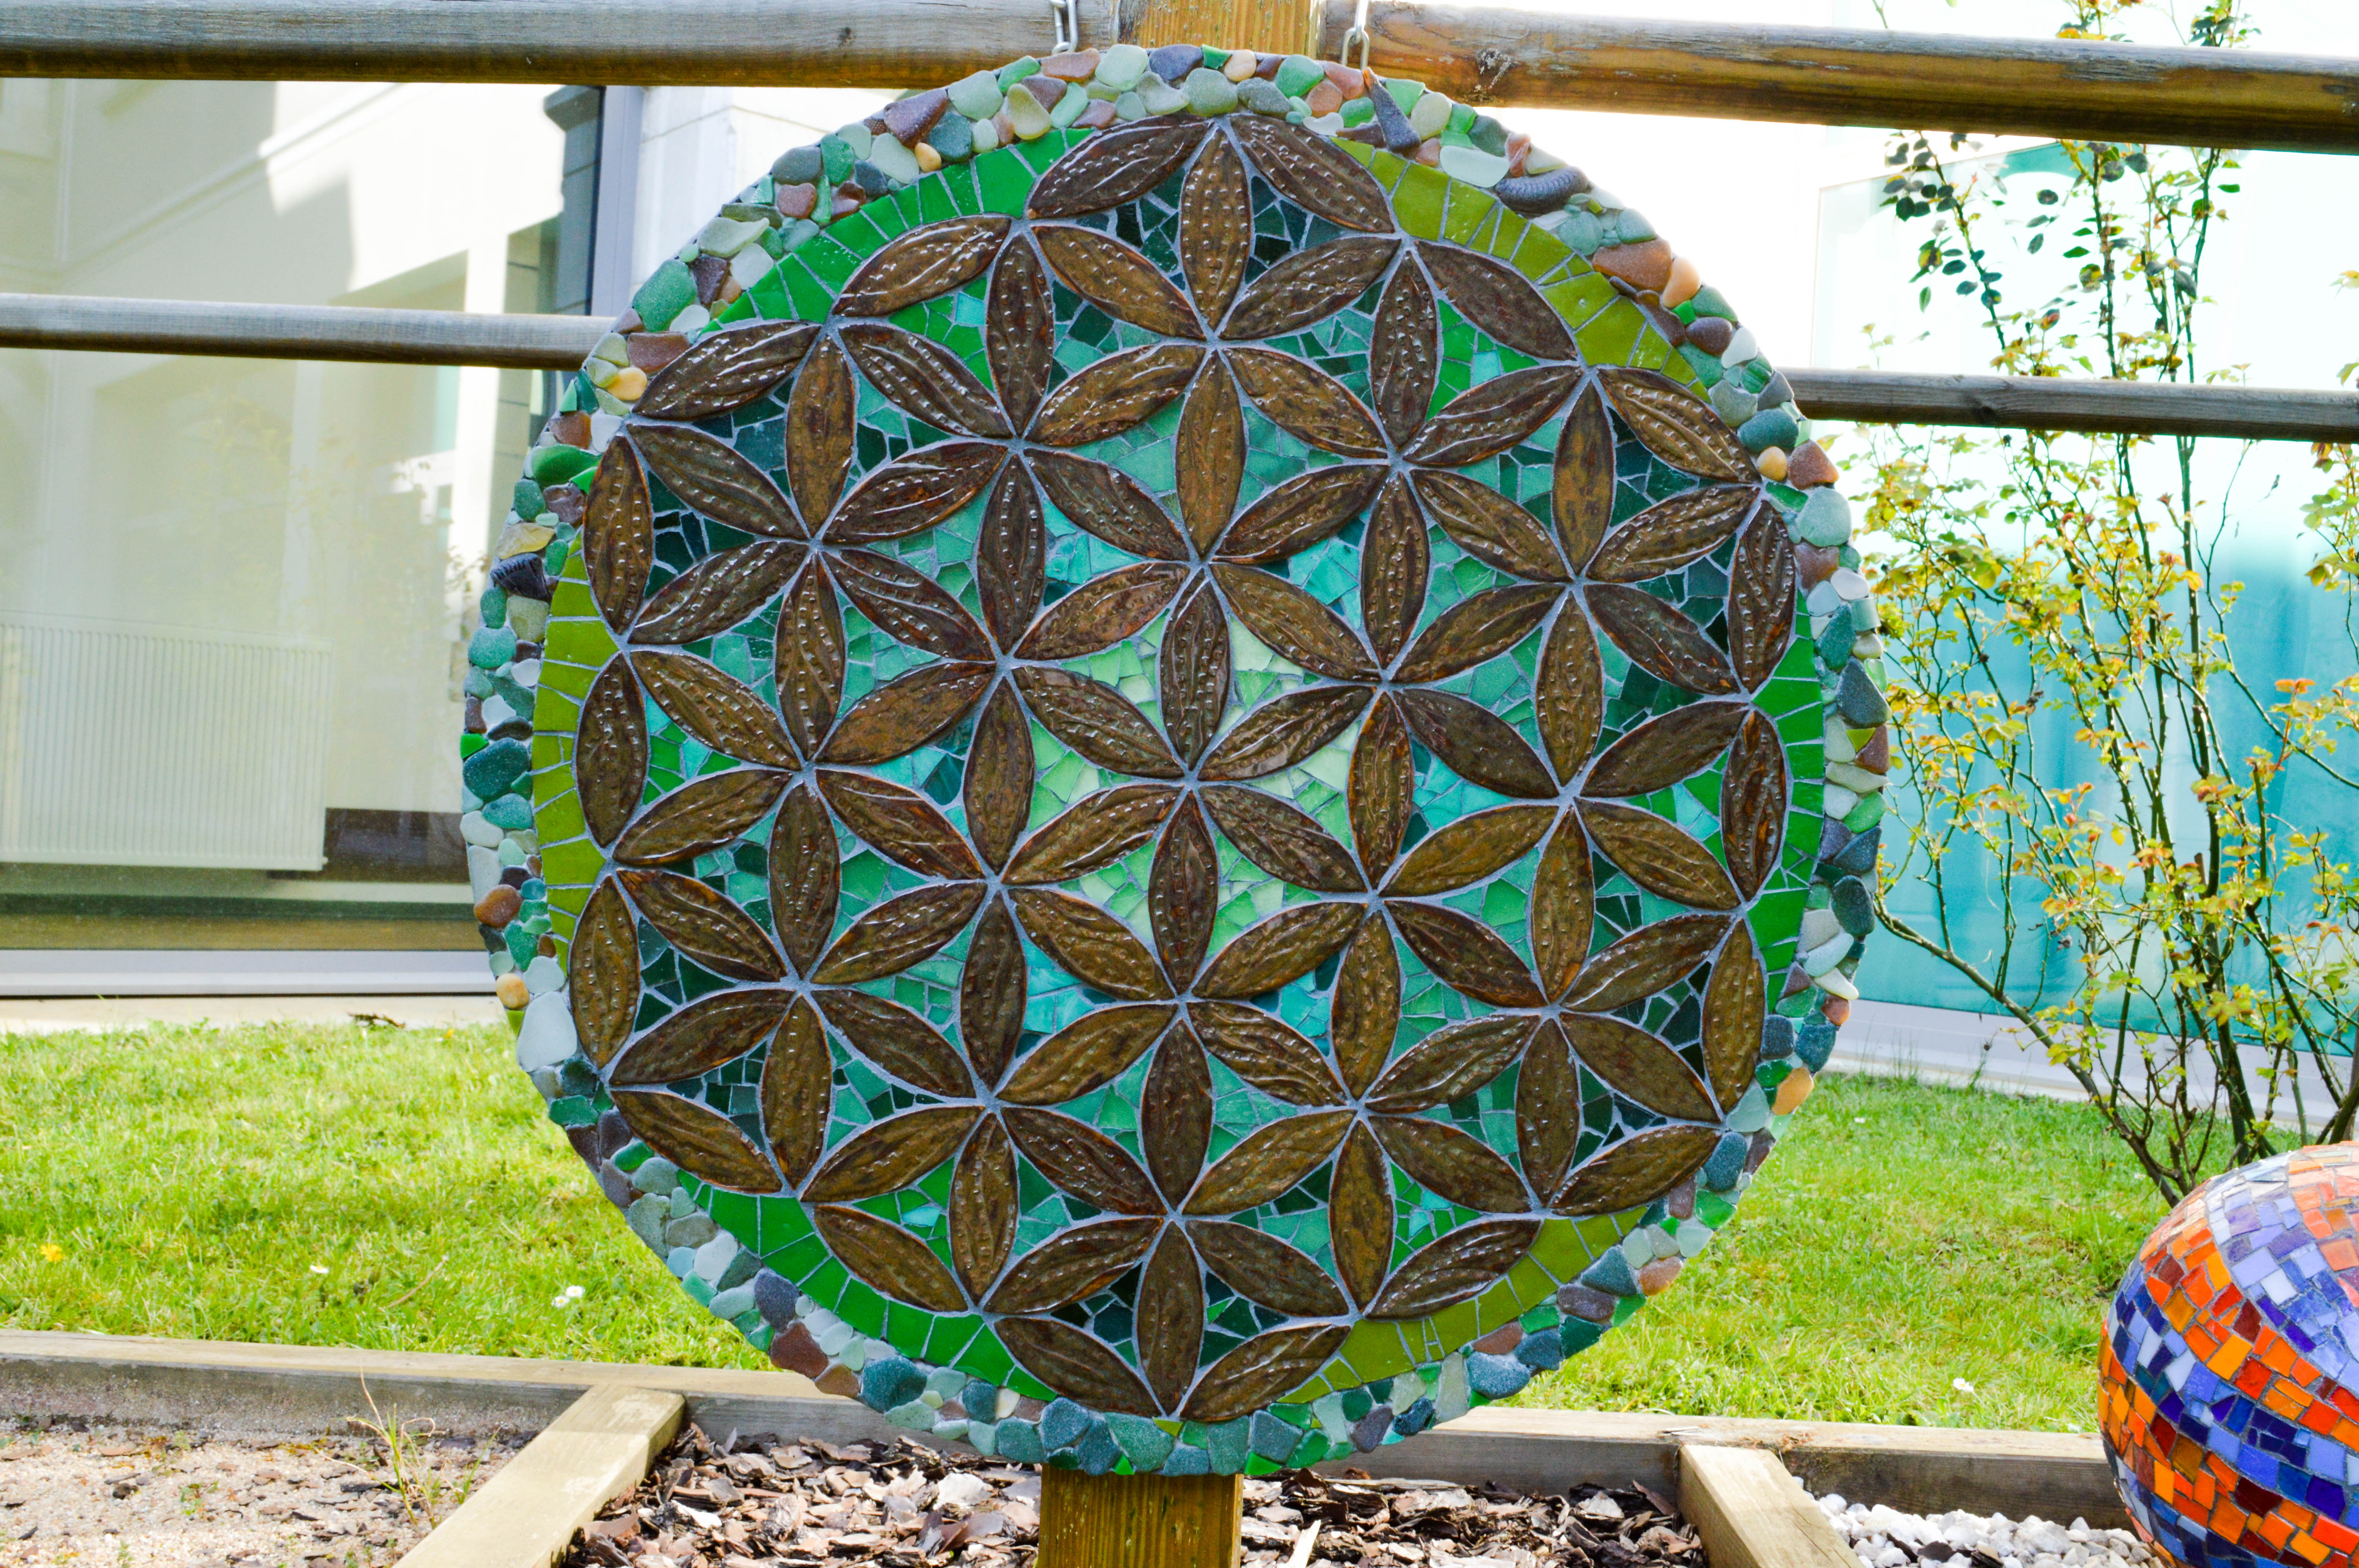 Mandala végétal réalisé avec des pétales en céramique, du verre, et des pierres de laplage, dan les couleurs verts.